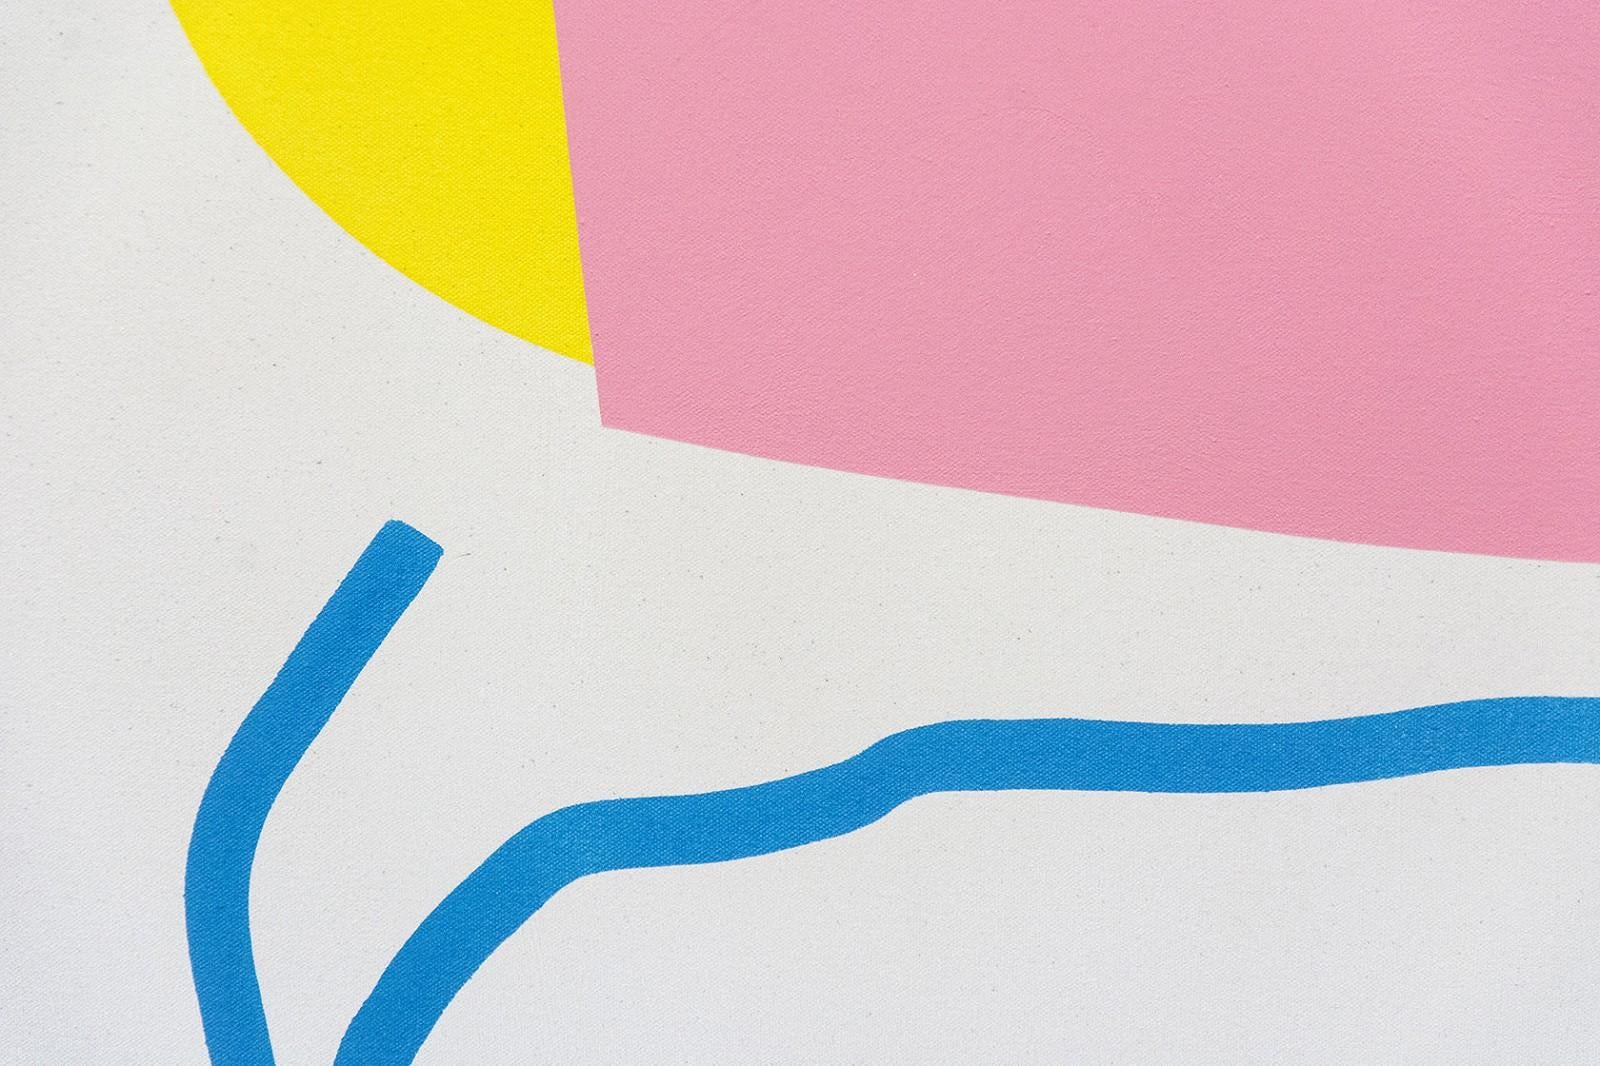 Rose contre-jaune et ligne bleue - formes abstraites colorées, acrylique sur toile - Painting de Aron Hill